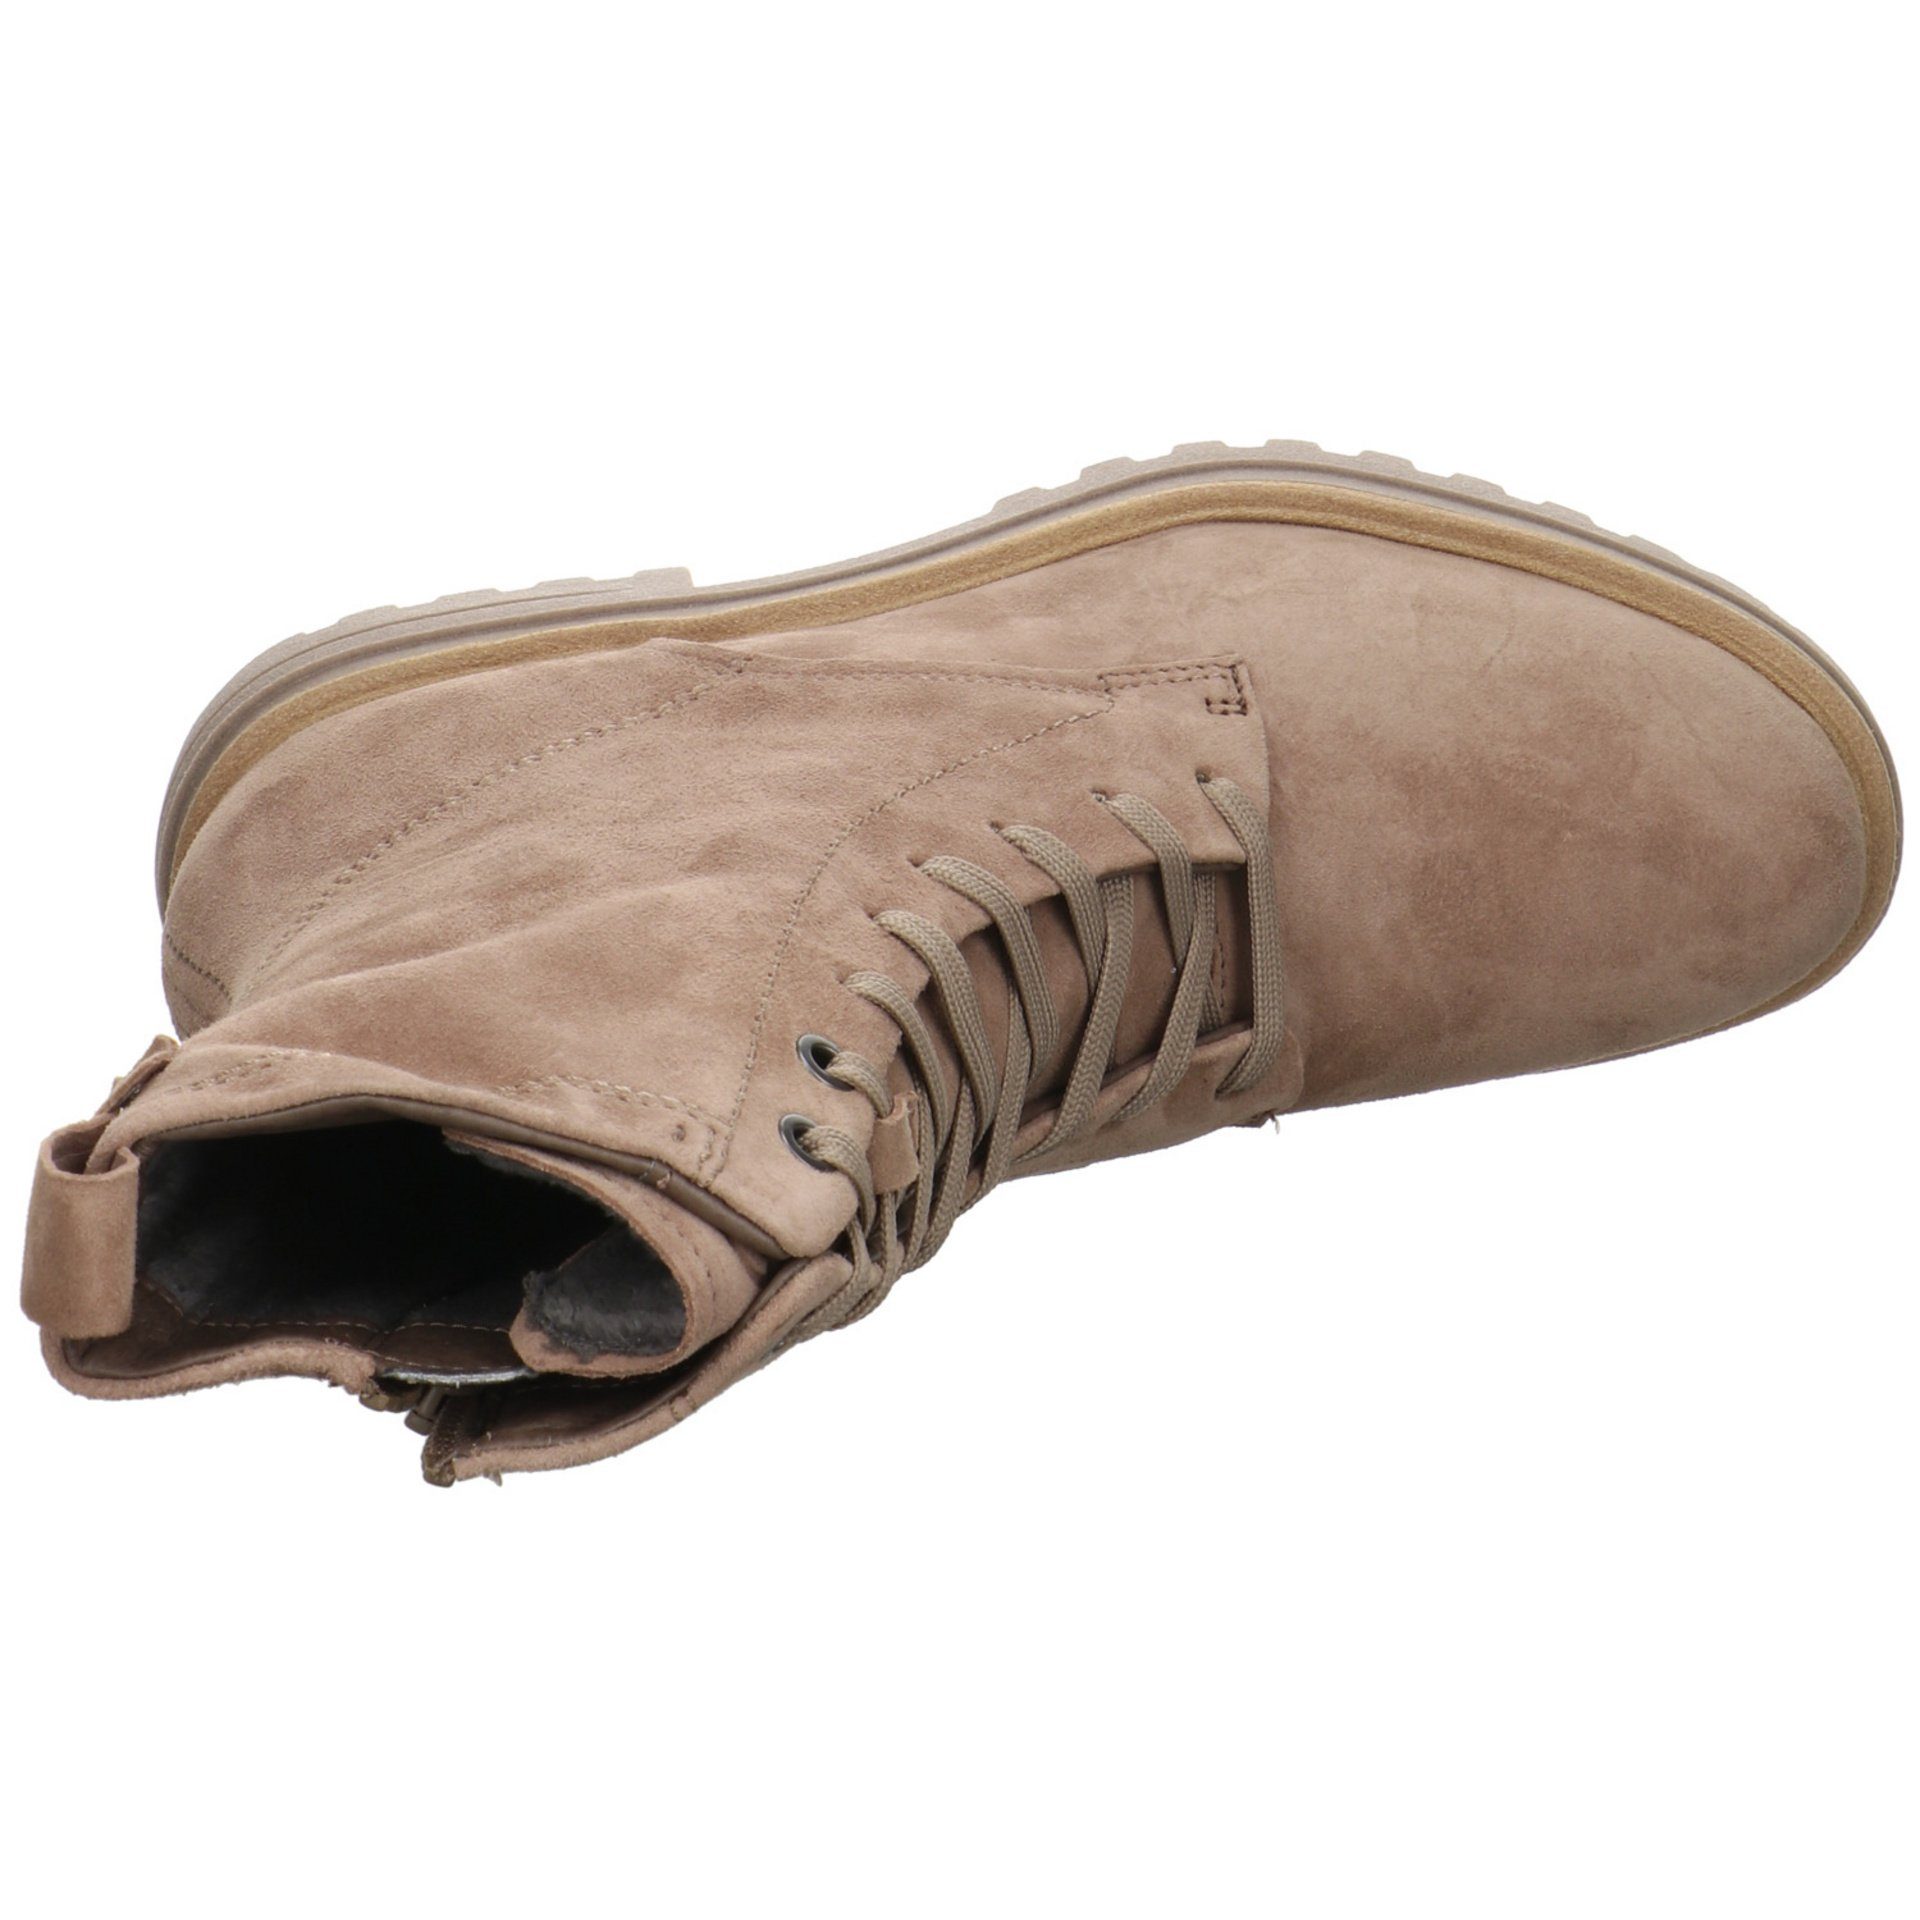 Boots Freizeit Tamaris (TAUPE Damen SUEDE) Schnürstiefelette Stiefeletten Elegant Braun Schuhe Veloursleder